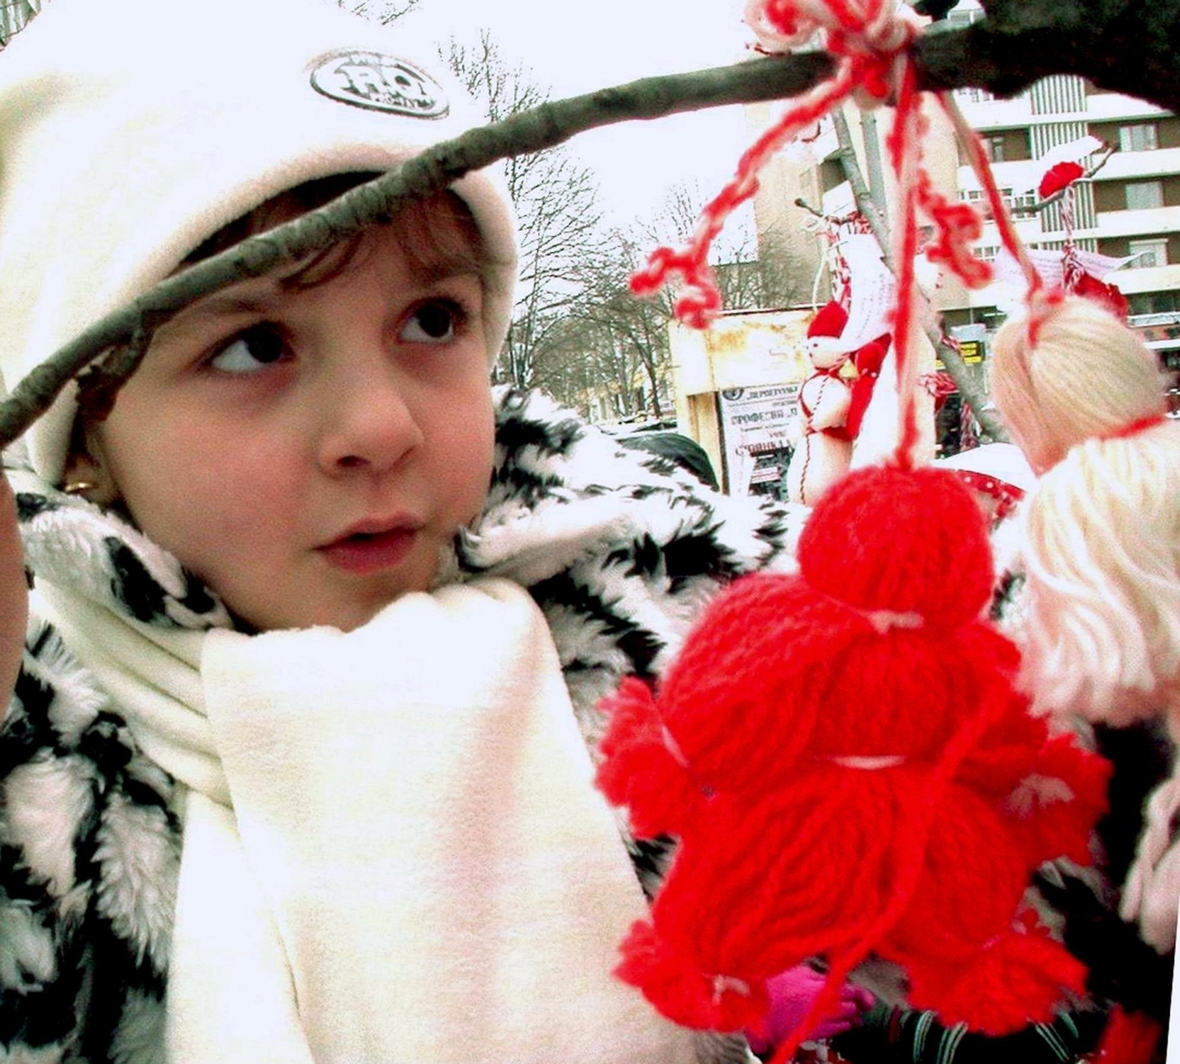 Ein bulgarisches Mädchen betrachtet die Martenizi, ein kleines Püppchen aus roten und weißen Wollfäden